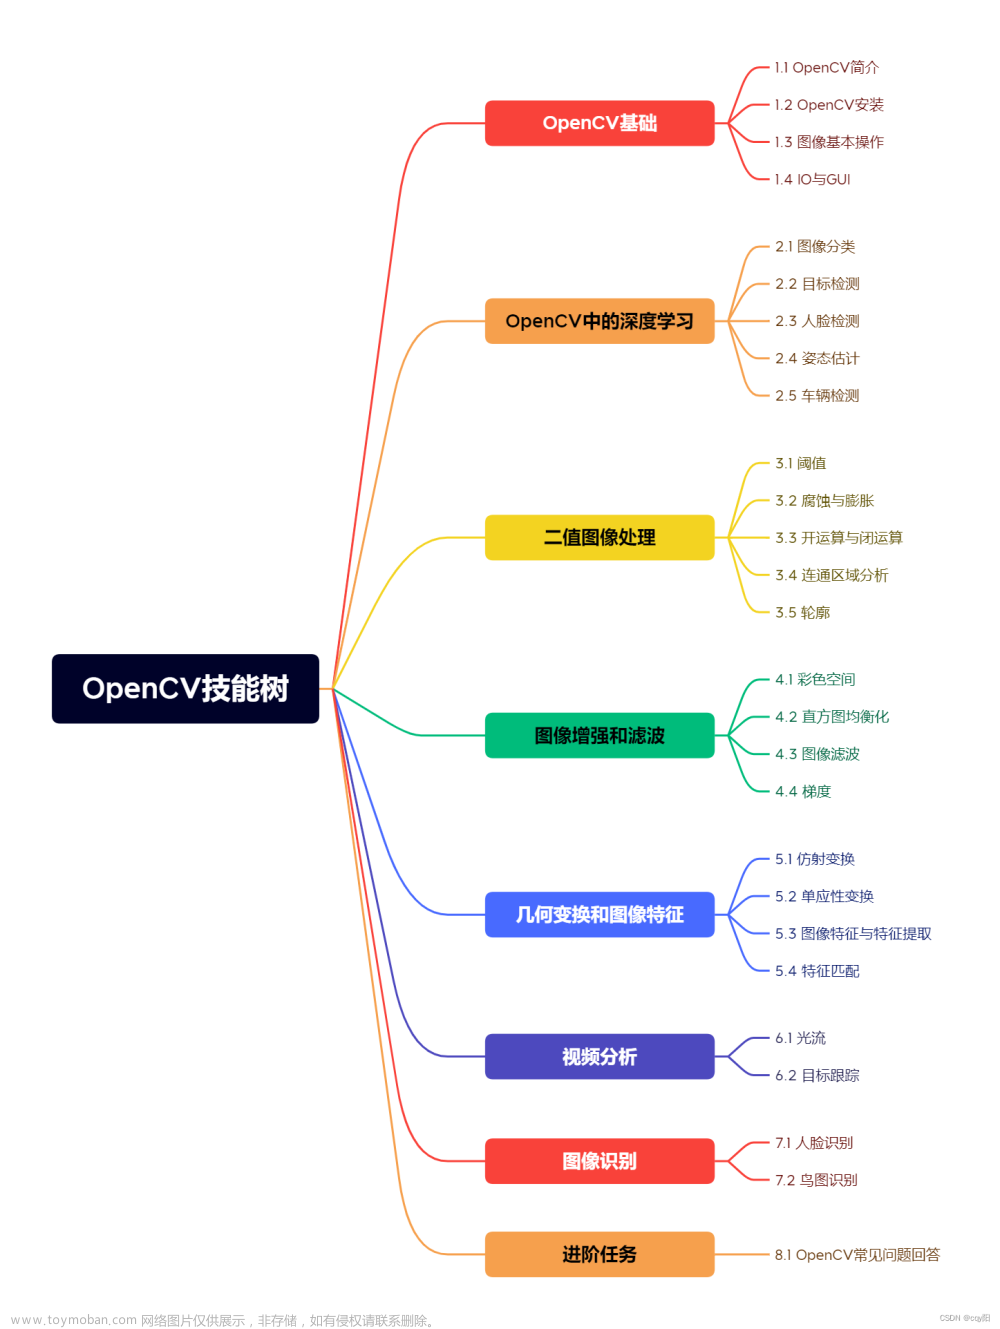 【OpenCV技能树】——OpenCV中的深度学习